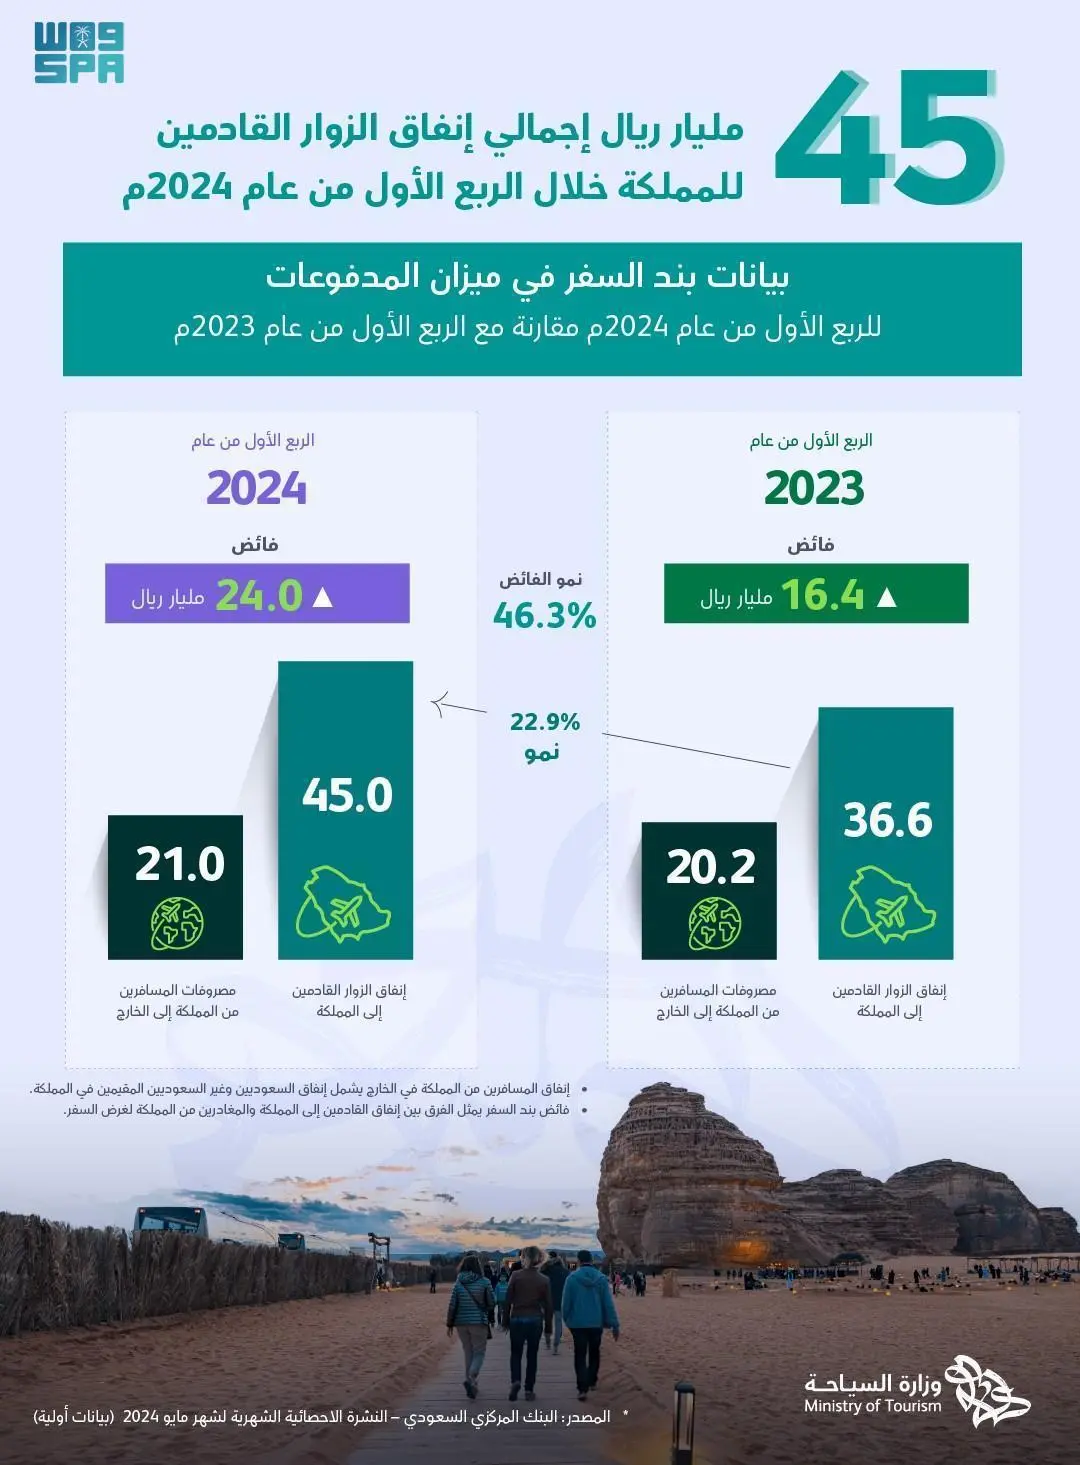 السياحة السعودية : تجاوز إنفاق الزوار القادمين إلى المملكة 45 مليار ريال خلال الربع الأول من العام الحالي